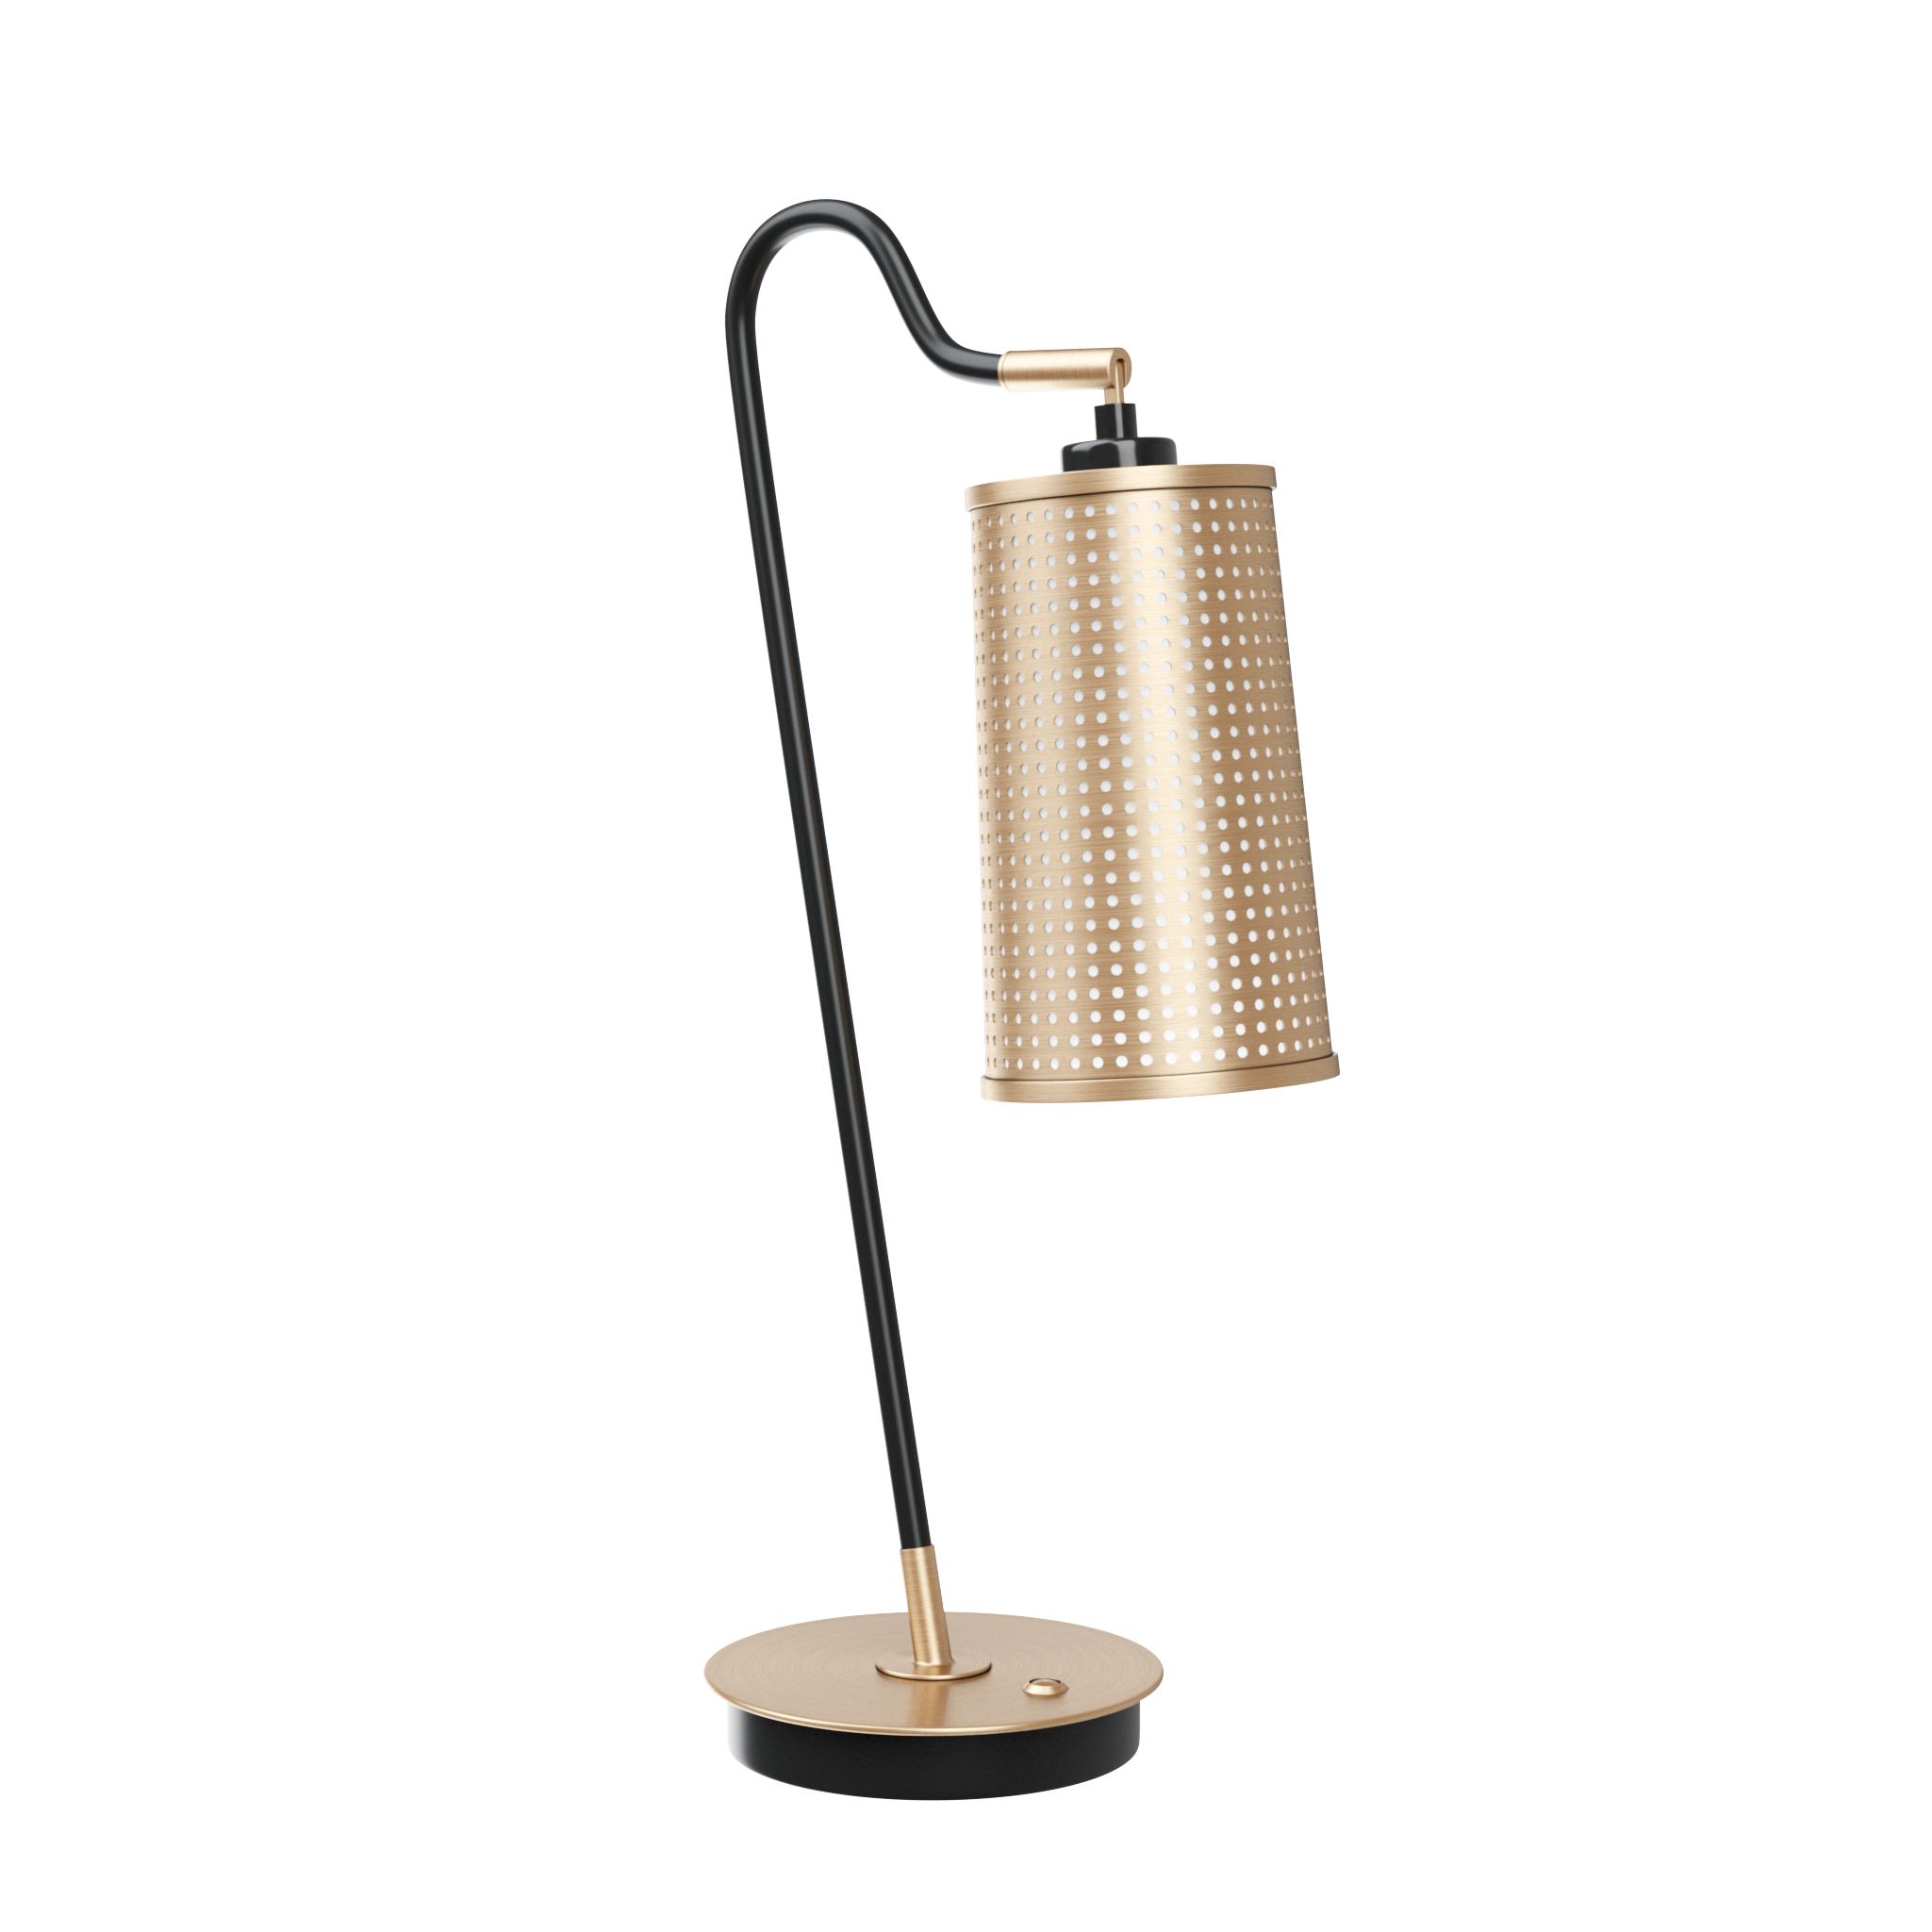 BERTAL by Romatti table lamp